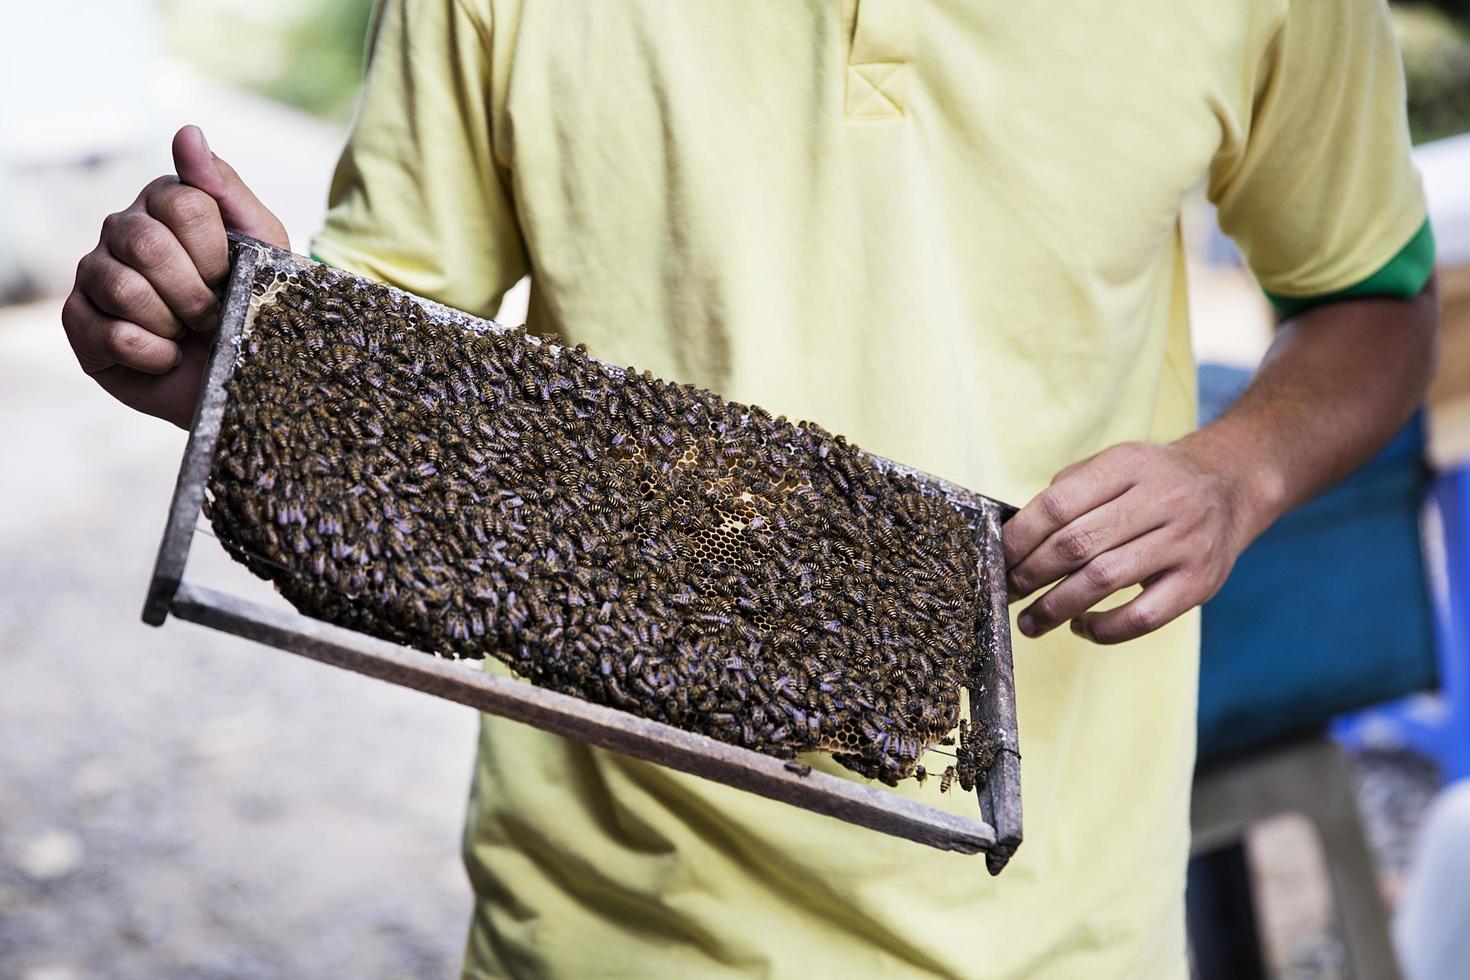 delta del mekong, 21 de febrero de 2017 - apicultor no identificado en el delta del mekong en vietnam. en el delta del mekong hay alrededor de 120.000 bandadas de abejas, lo que genera una producción anual de 240 toneladas de miel. foto